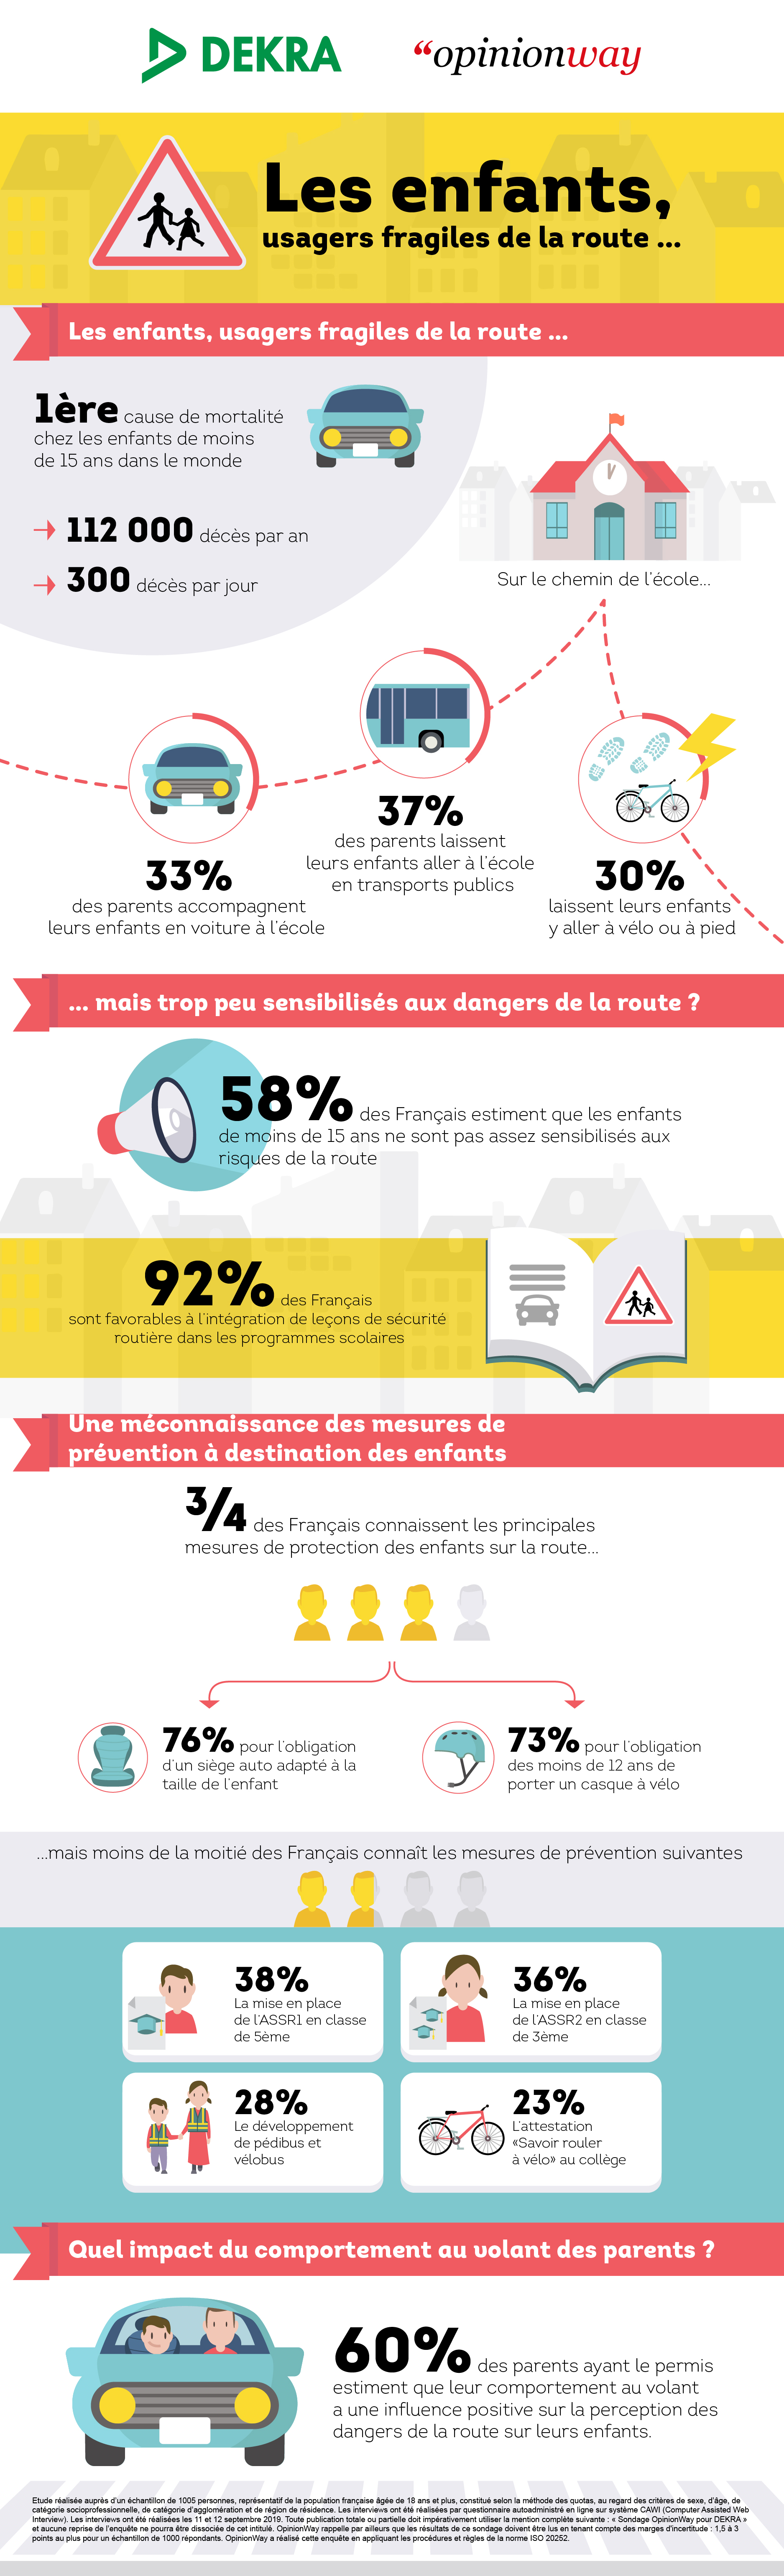 infographie DEKRA Opinionway « Les enfants et la sécurité routière »